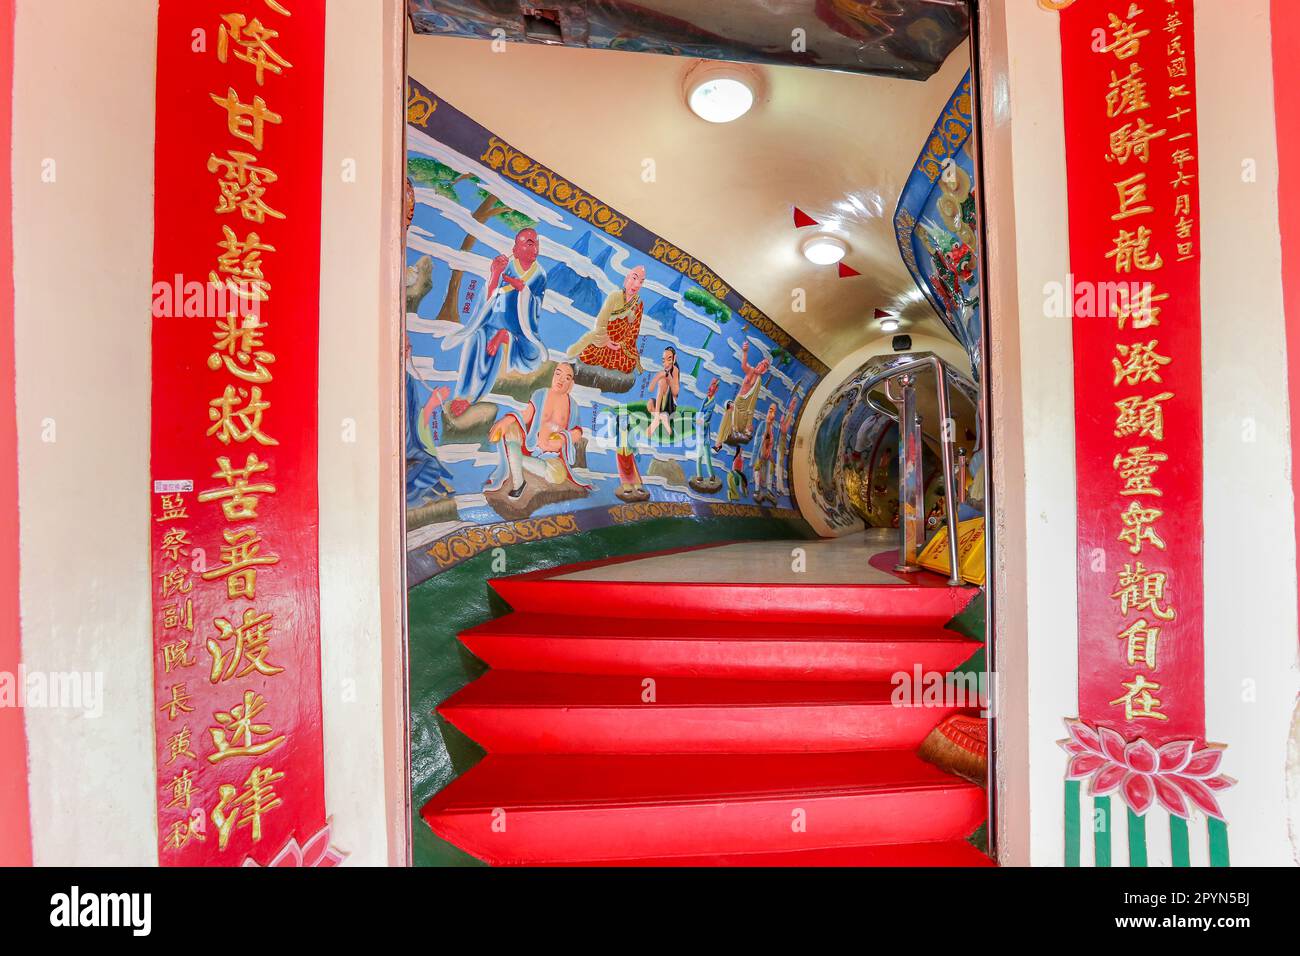 Dipinti all'interno dei padiglioni di primavera e autunno (春秋閣), del lago Lotus, della città di Kaohsiung, di Taiwan, del palazzo chi Ming, Pagoda del tempio taoista (taoista) in stile cinese Foto Stock